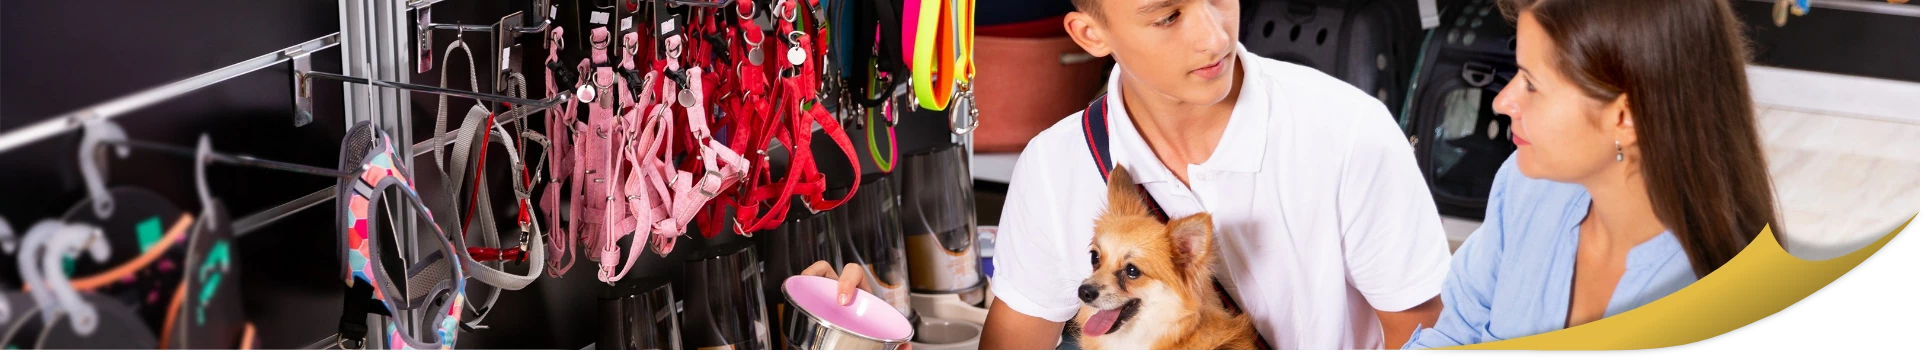 banner - sklep dla zwierząt dobieranie smyczy dla psa